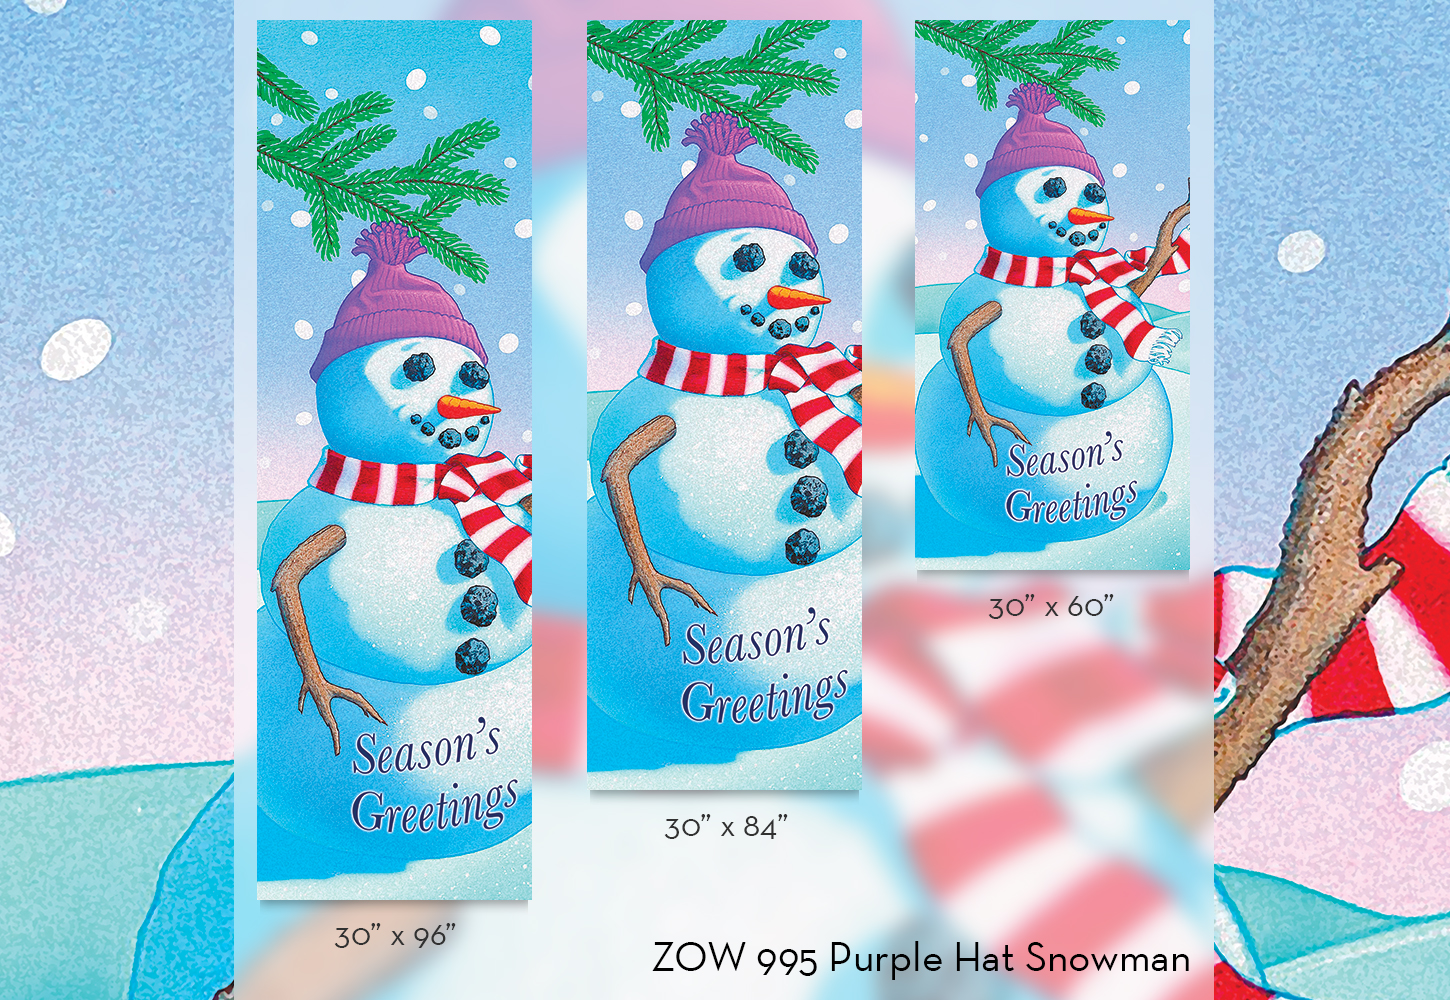 ZOW 995 Purple Hat Snowman